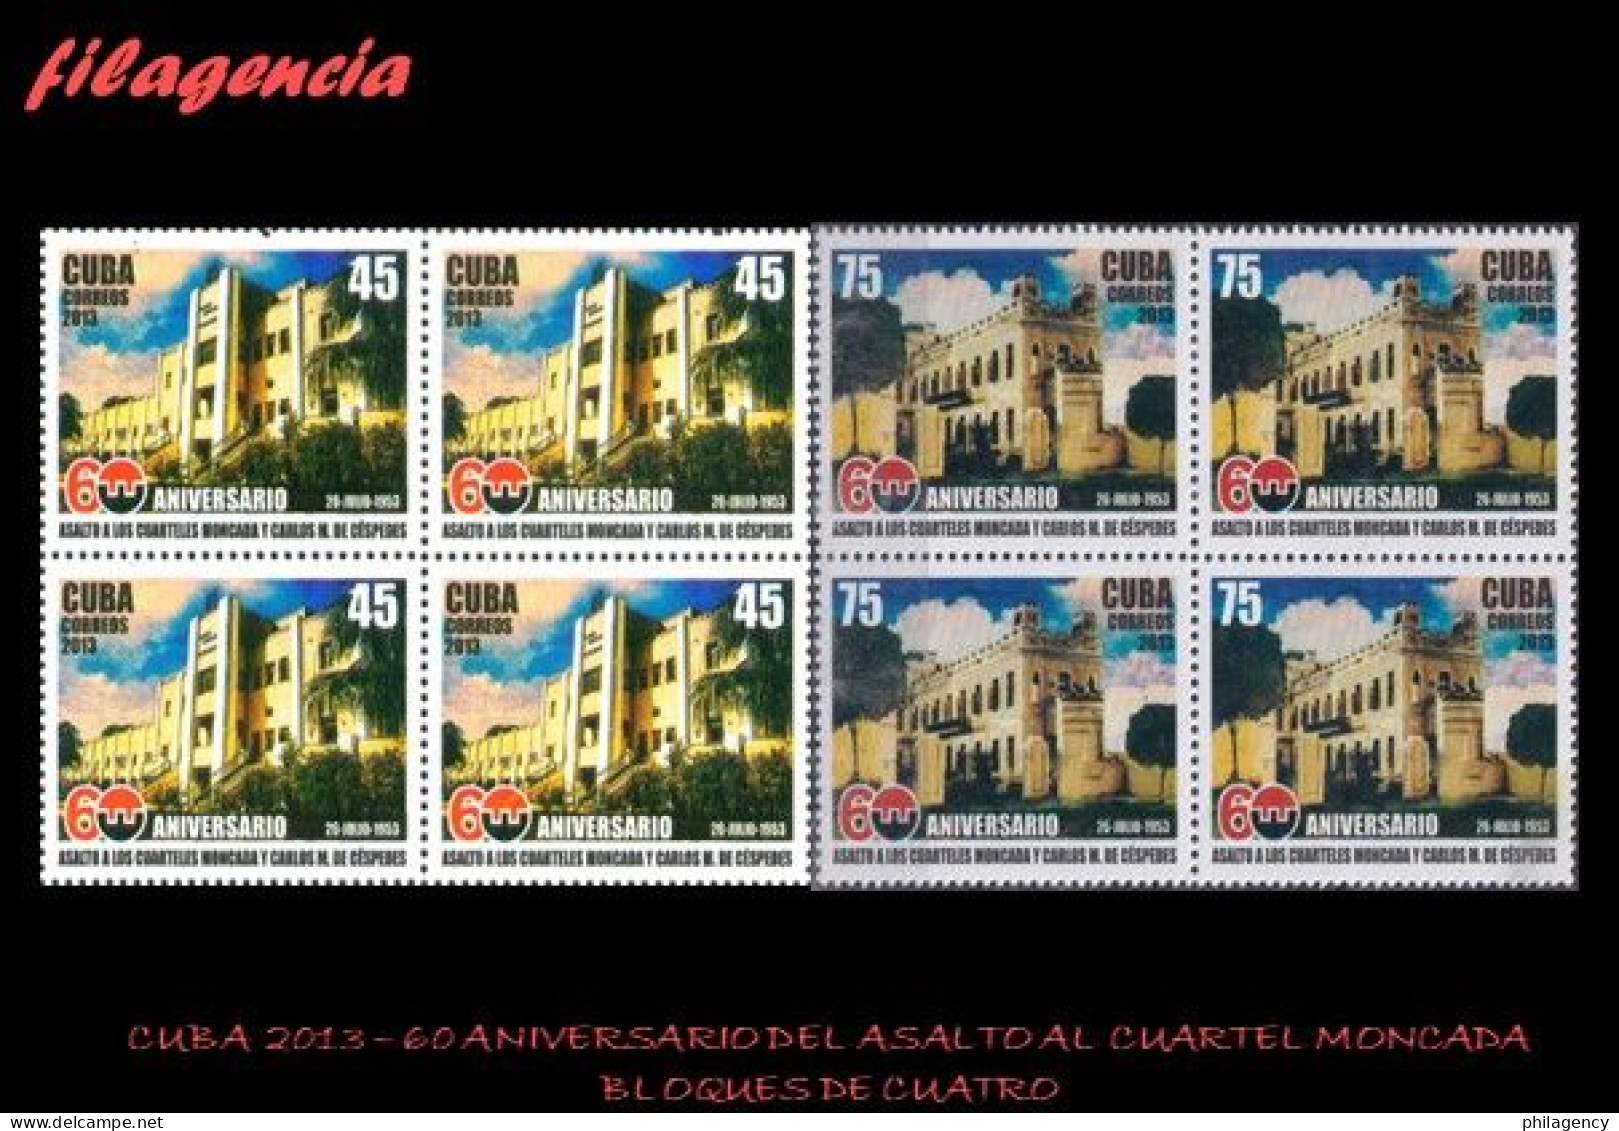 CUBA. BLOQUES DE CUATRO. 2013-26 60 ANIVERSARIO DEL ASALTO A LOS CUARTELES MONCADA & CARLOS MANUEL DE CÉSPEDES - Unused Stamps